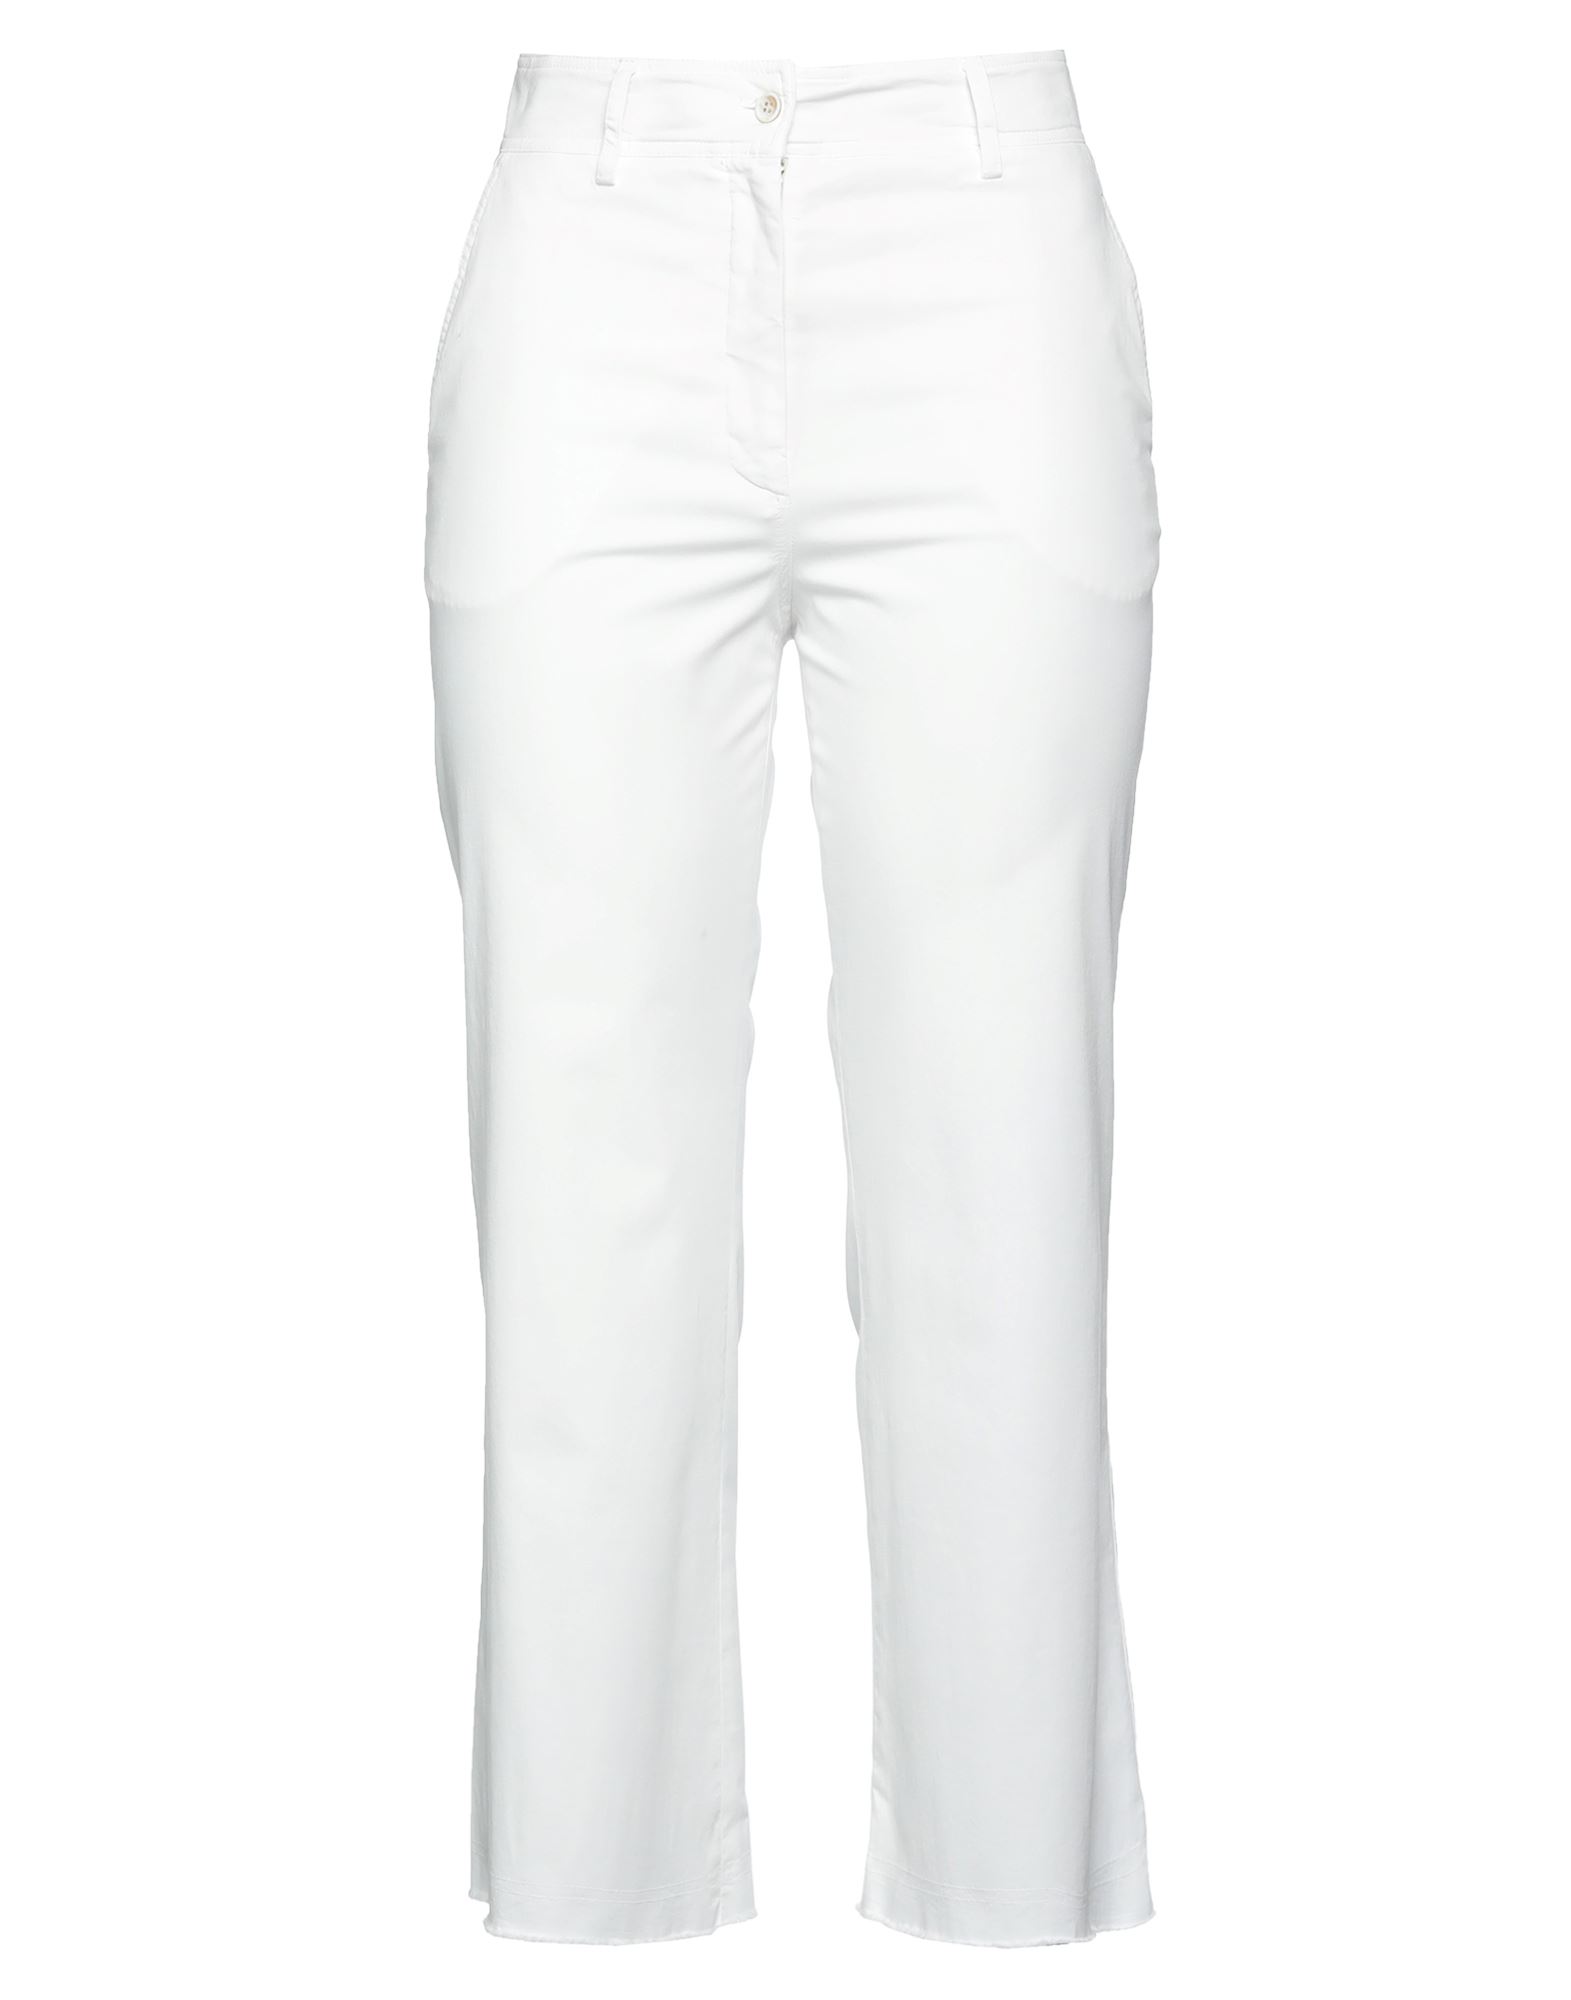 Antonelli Woman Pants White Size 6 Cotton, Elastane